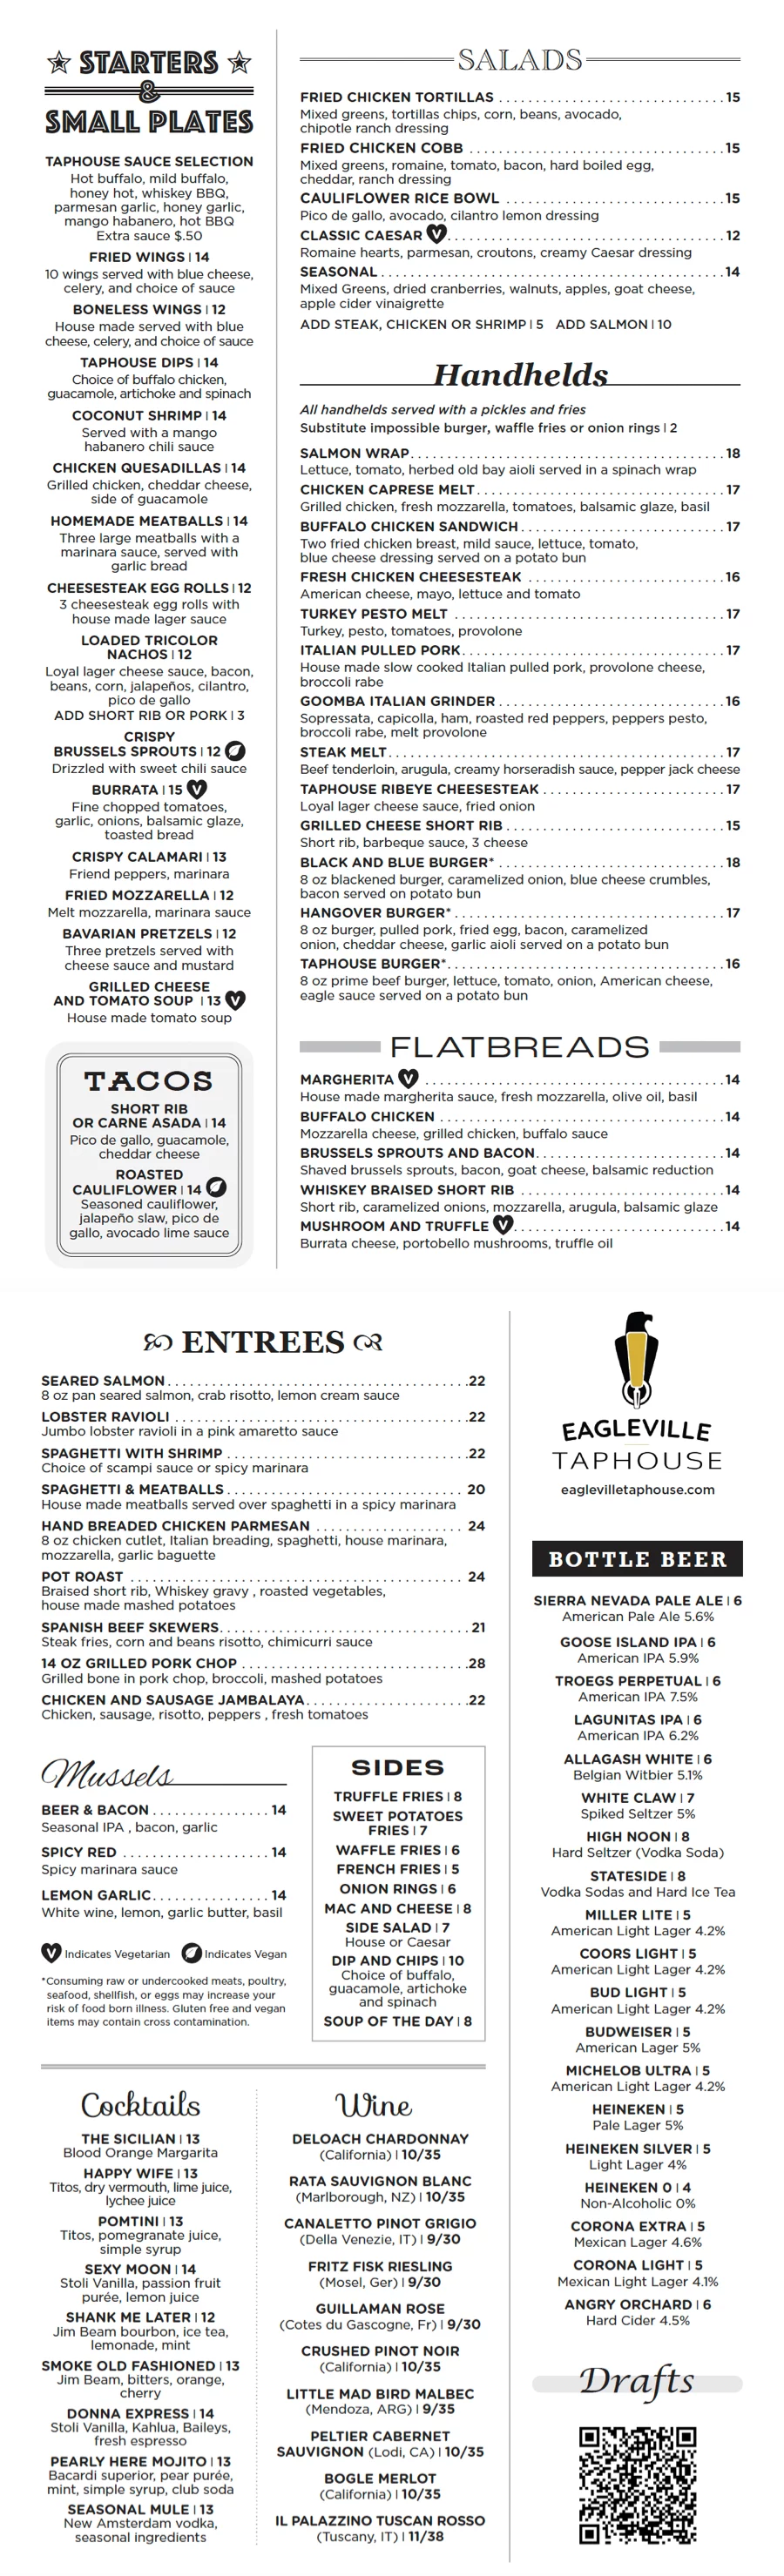 Eagleville Taphouse bar menu